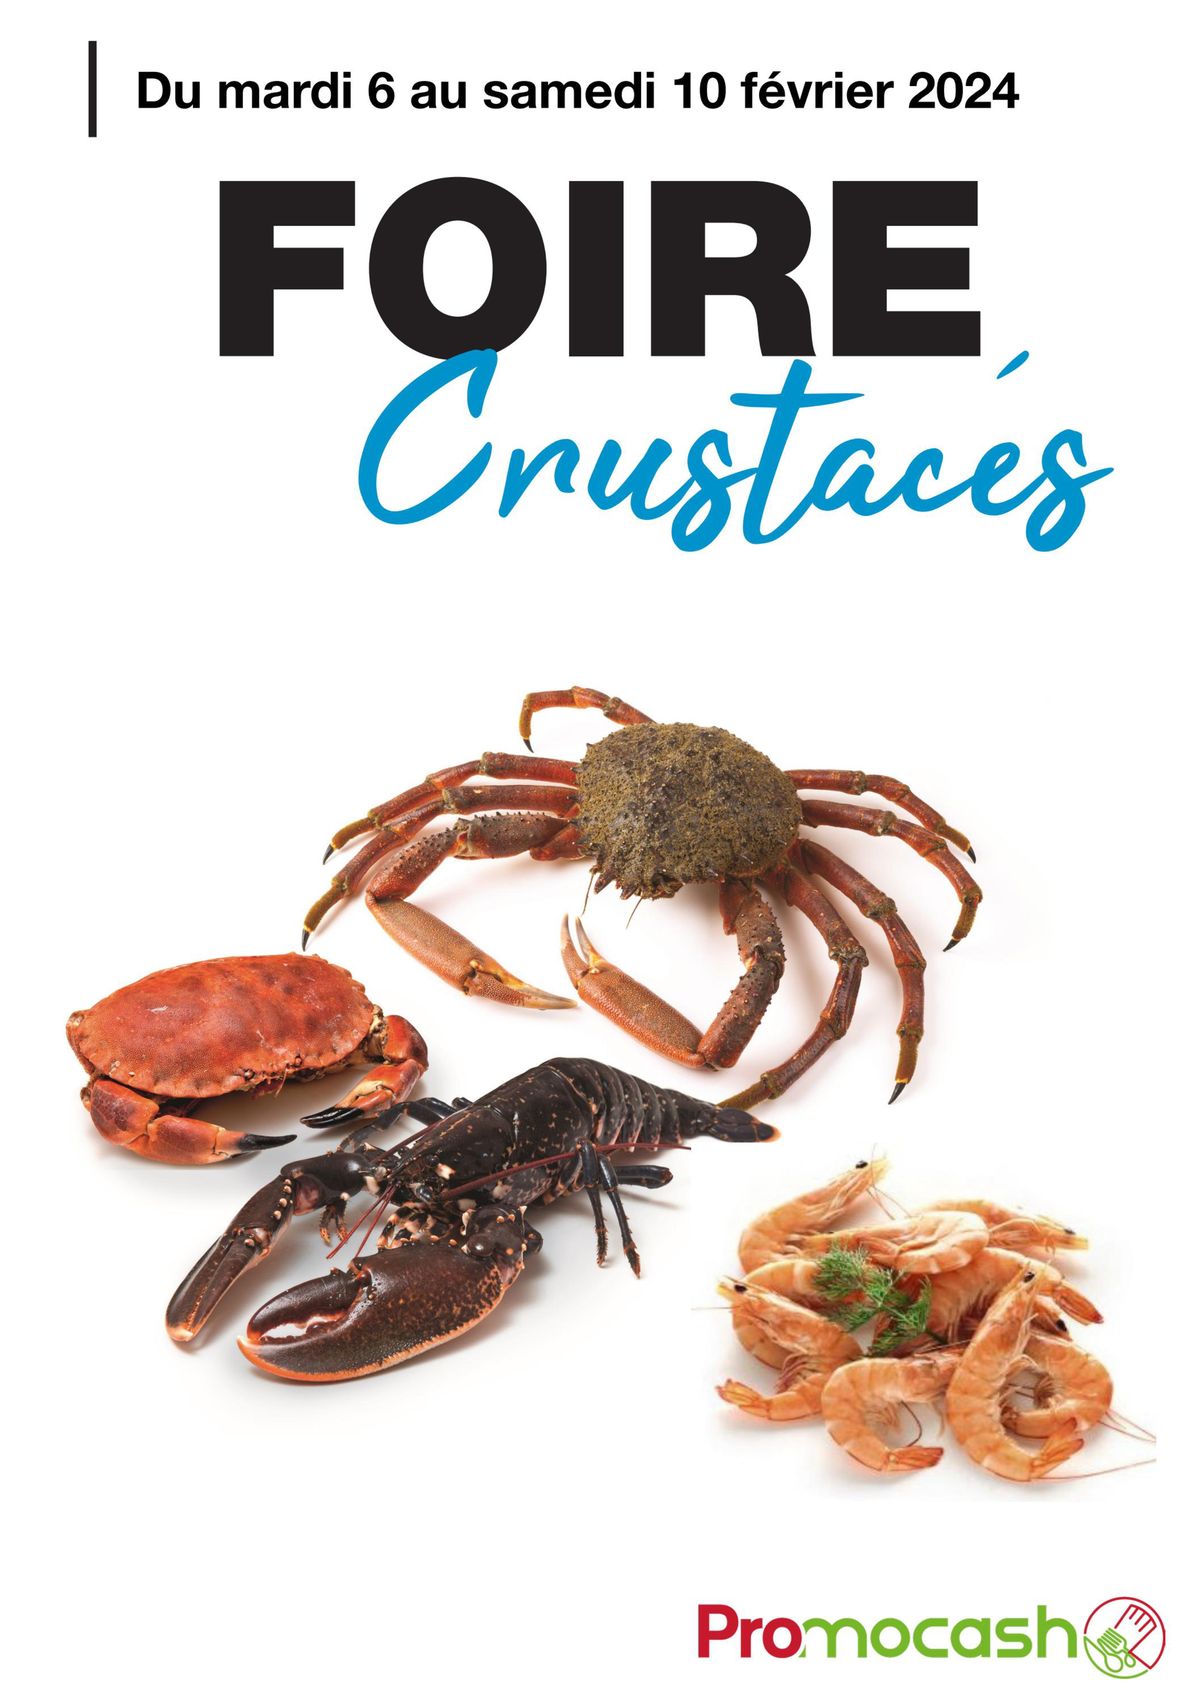 Catalogue Foire crustacés, page 00001